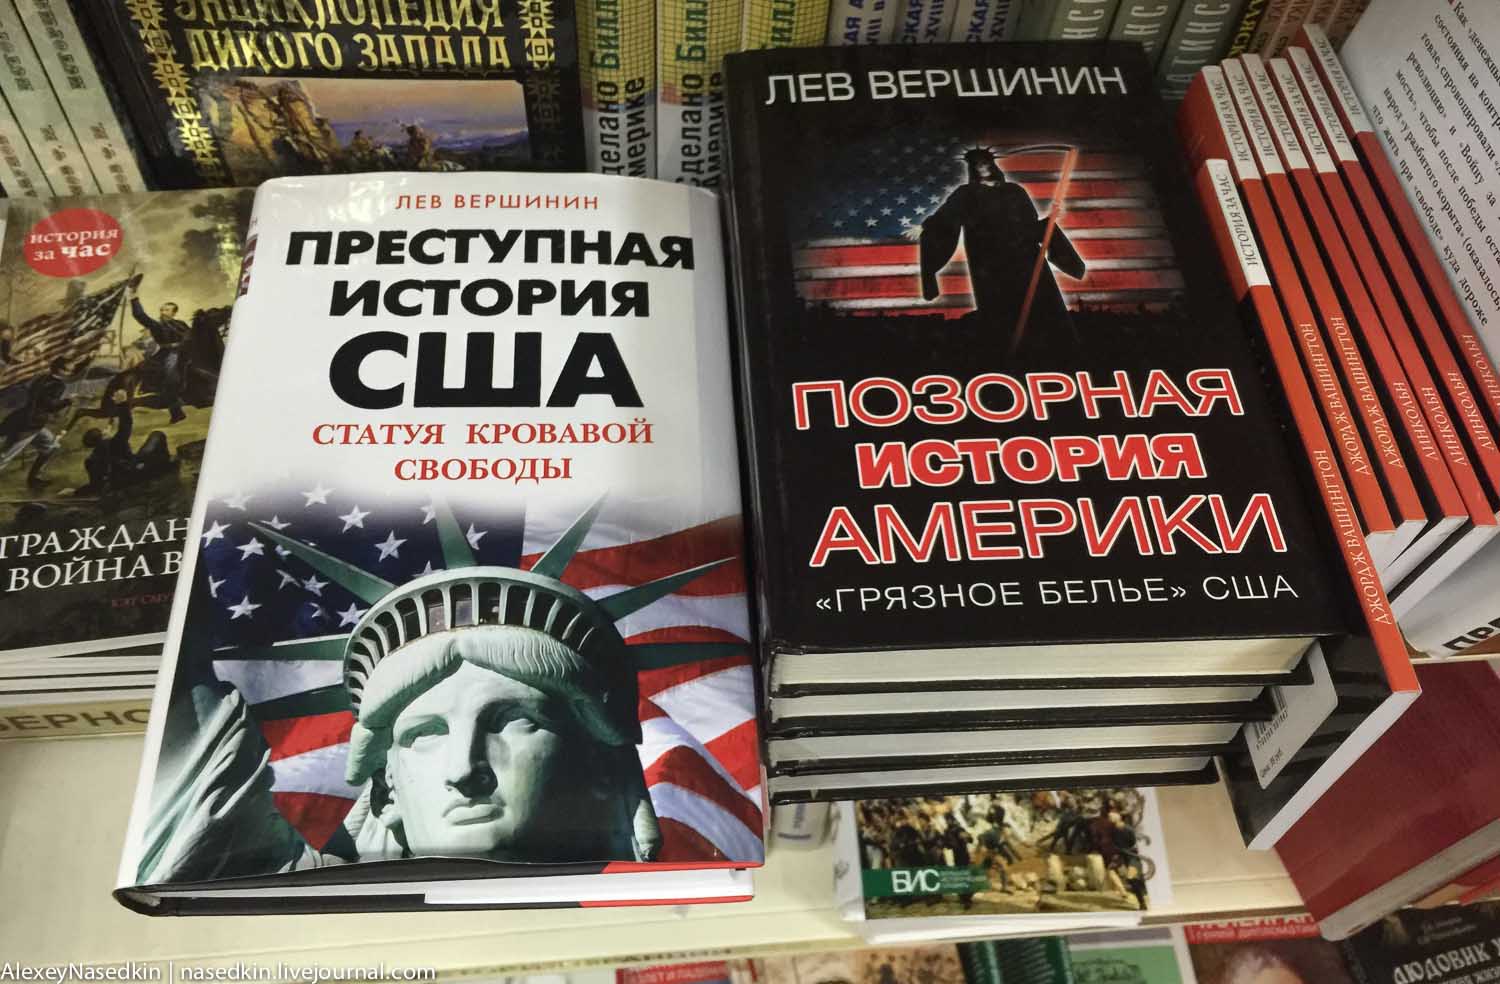 Чем торгуют в московских книжных магазинах IMG_0041.jpg